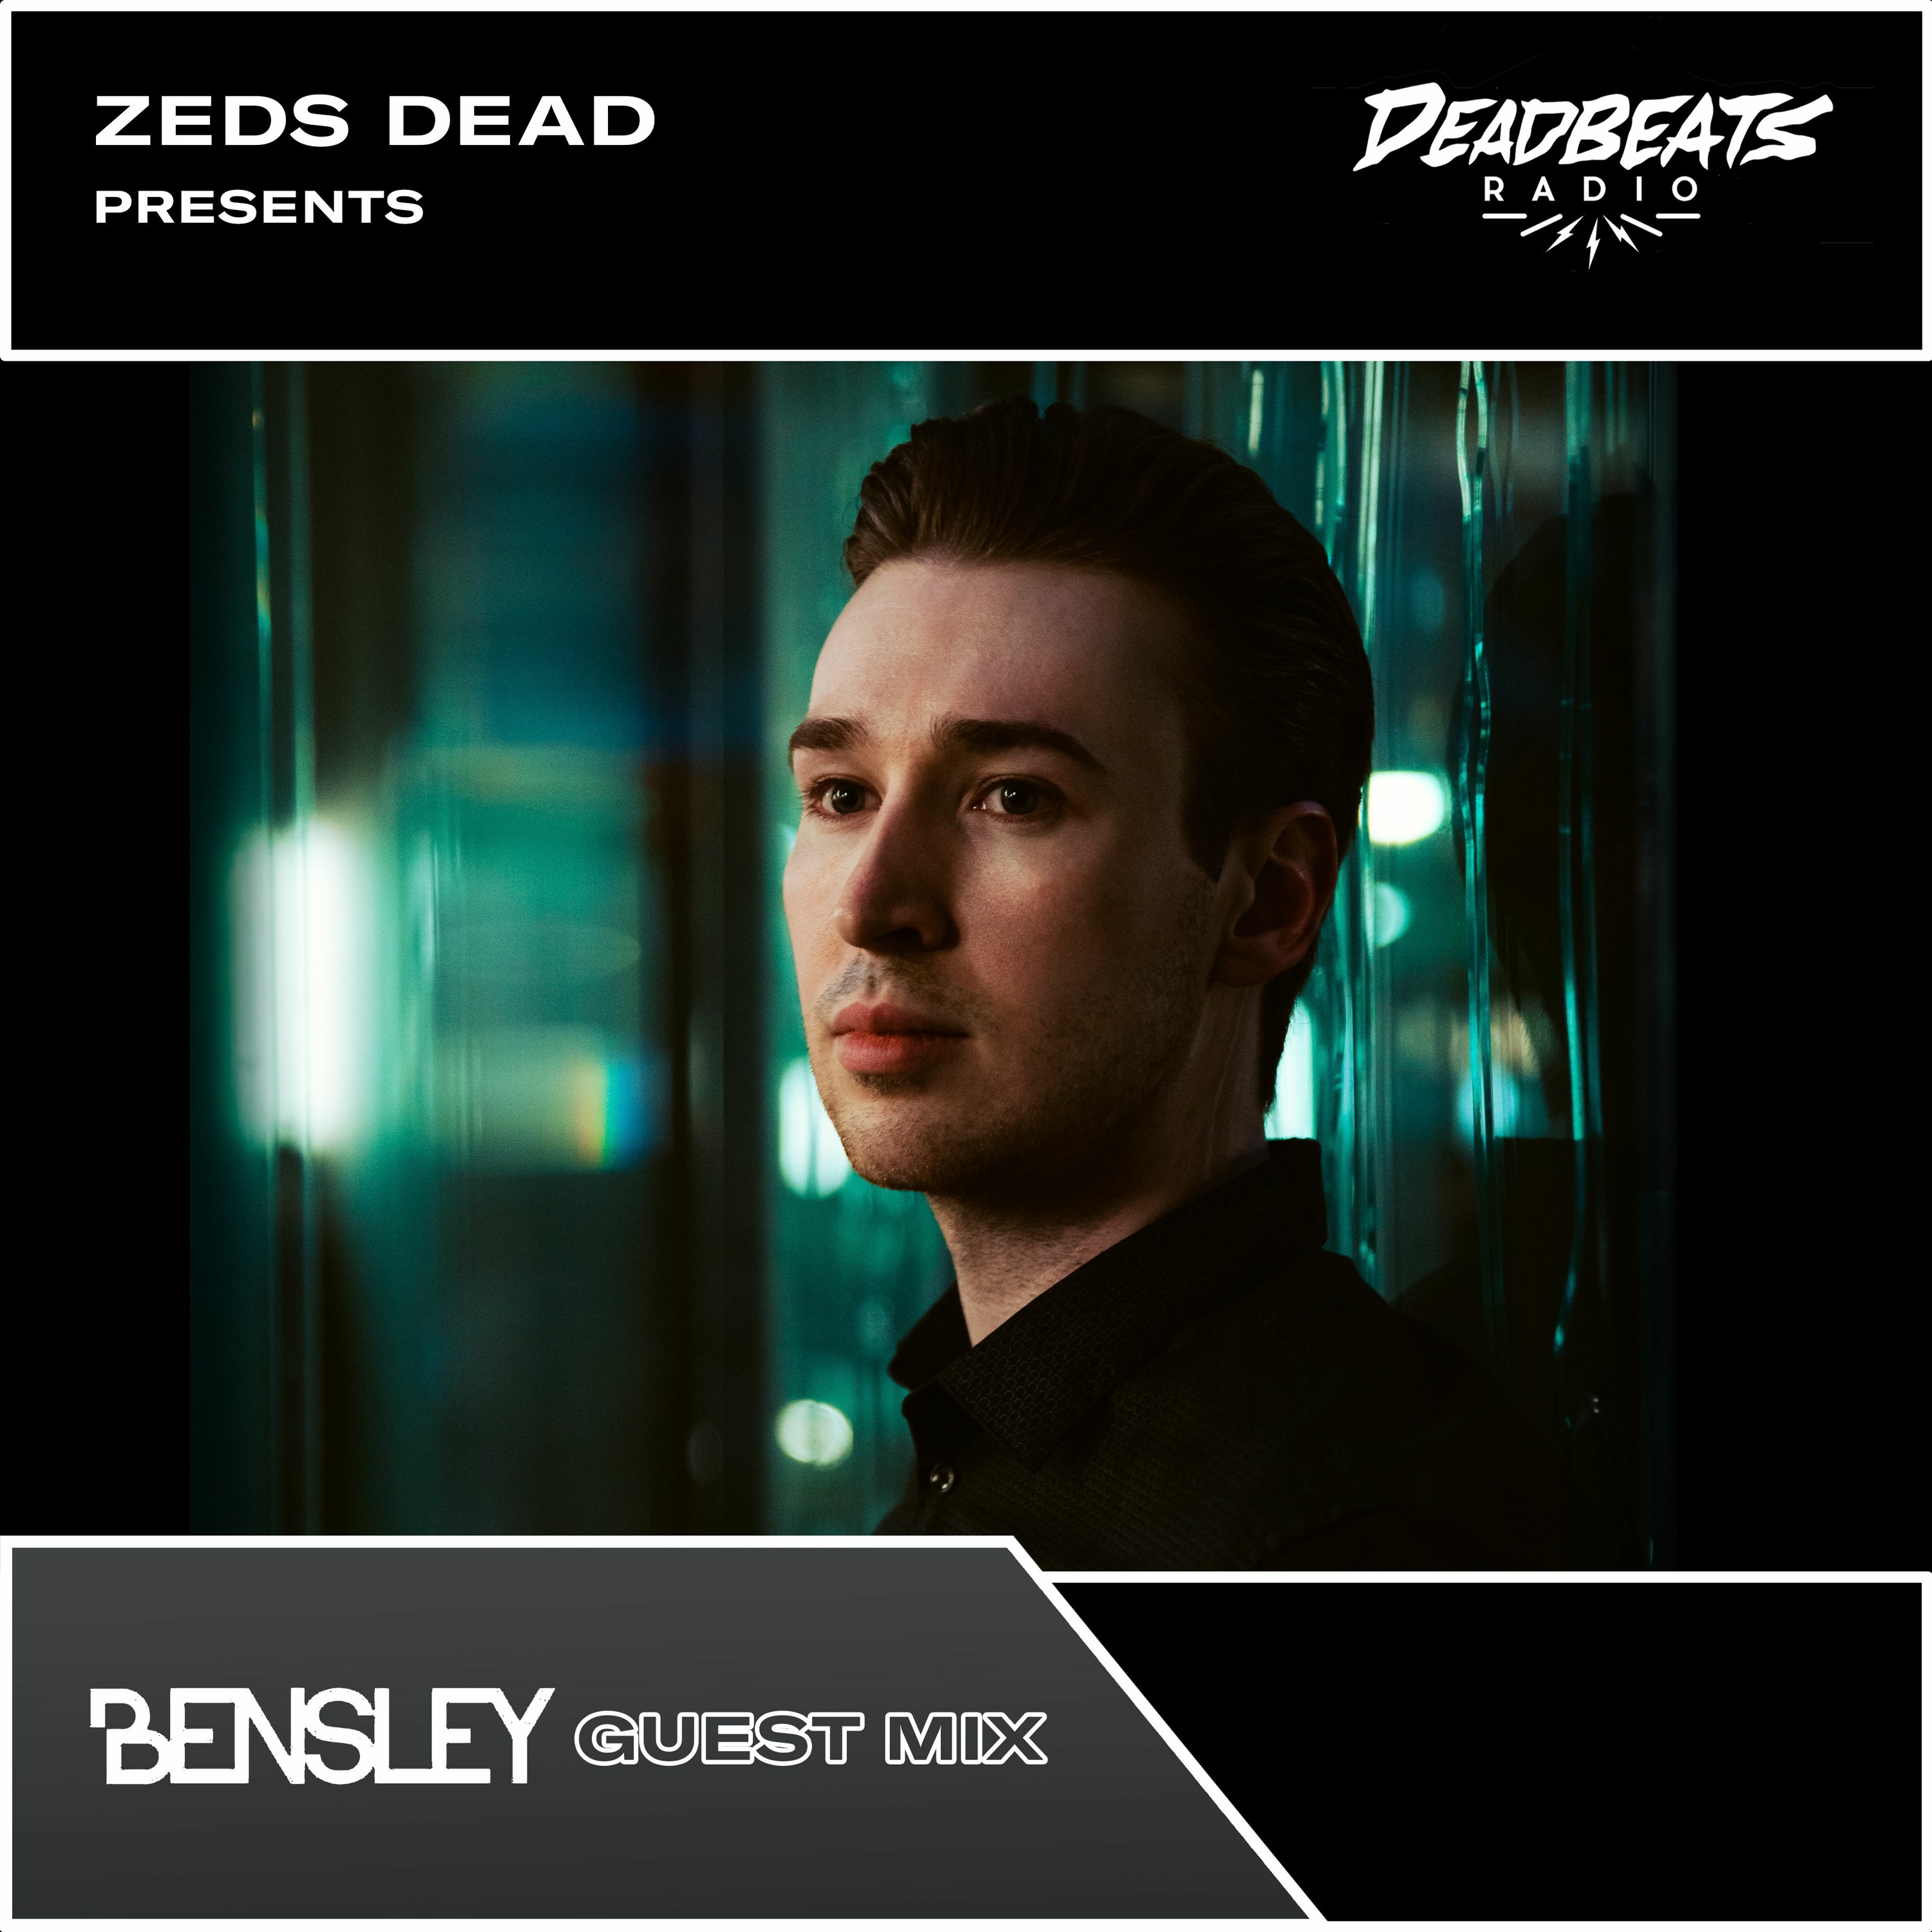 #215 Deadbeats Radio with Zeds Dead // Bensley Guestmix